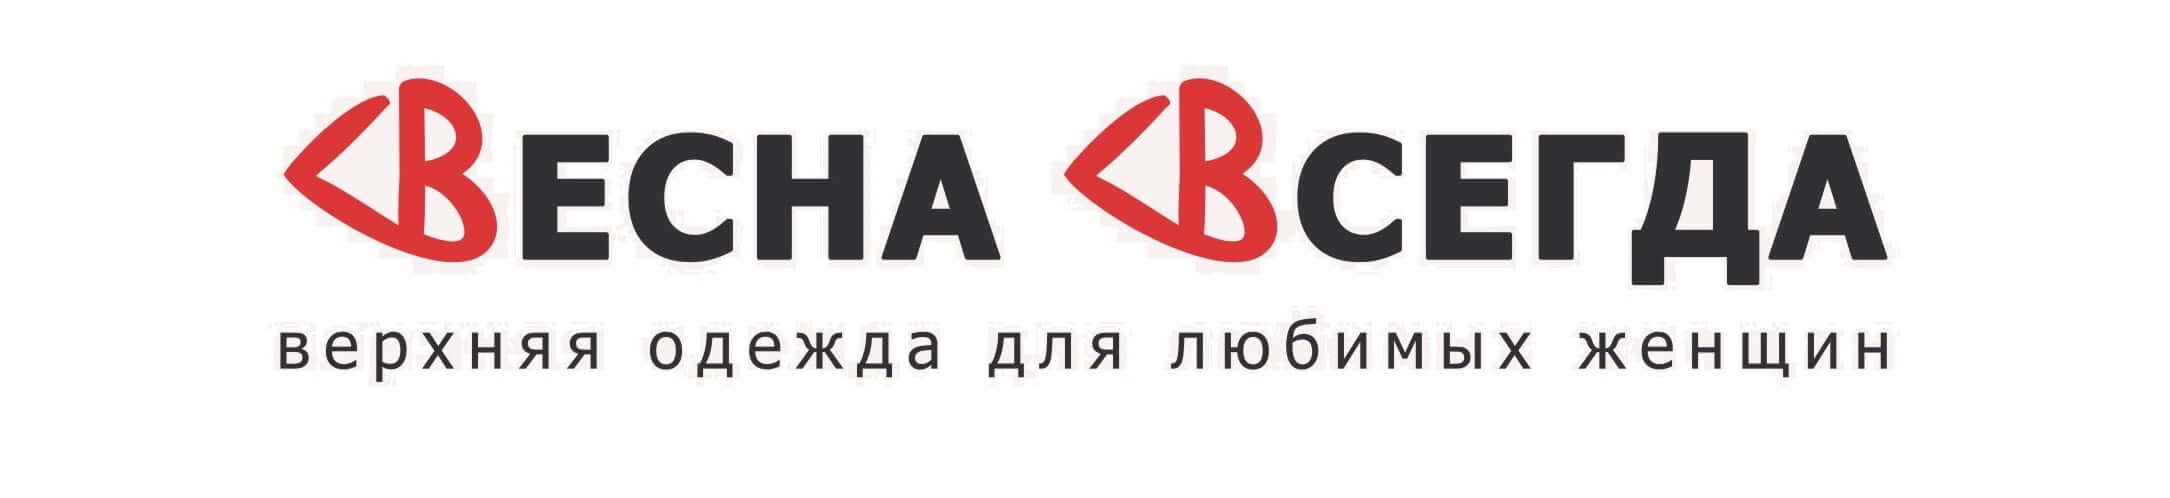 Logotip Vesna Vsegda 1